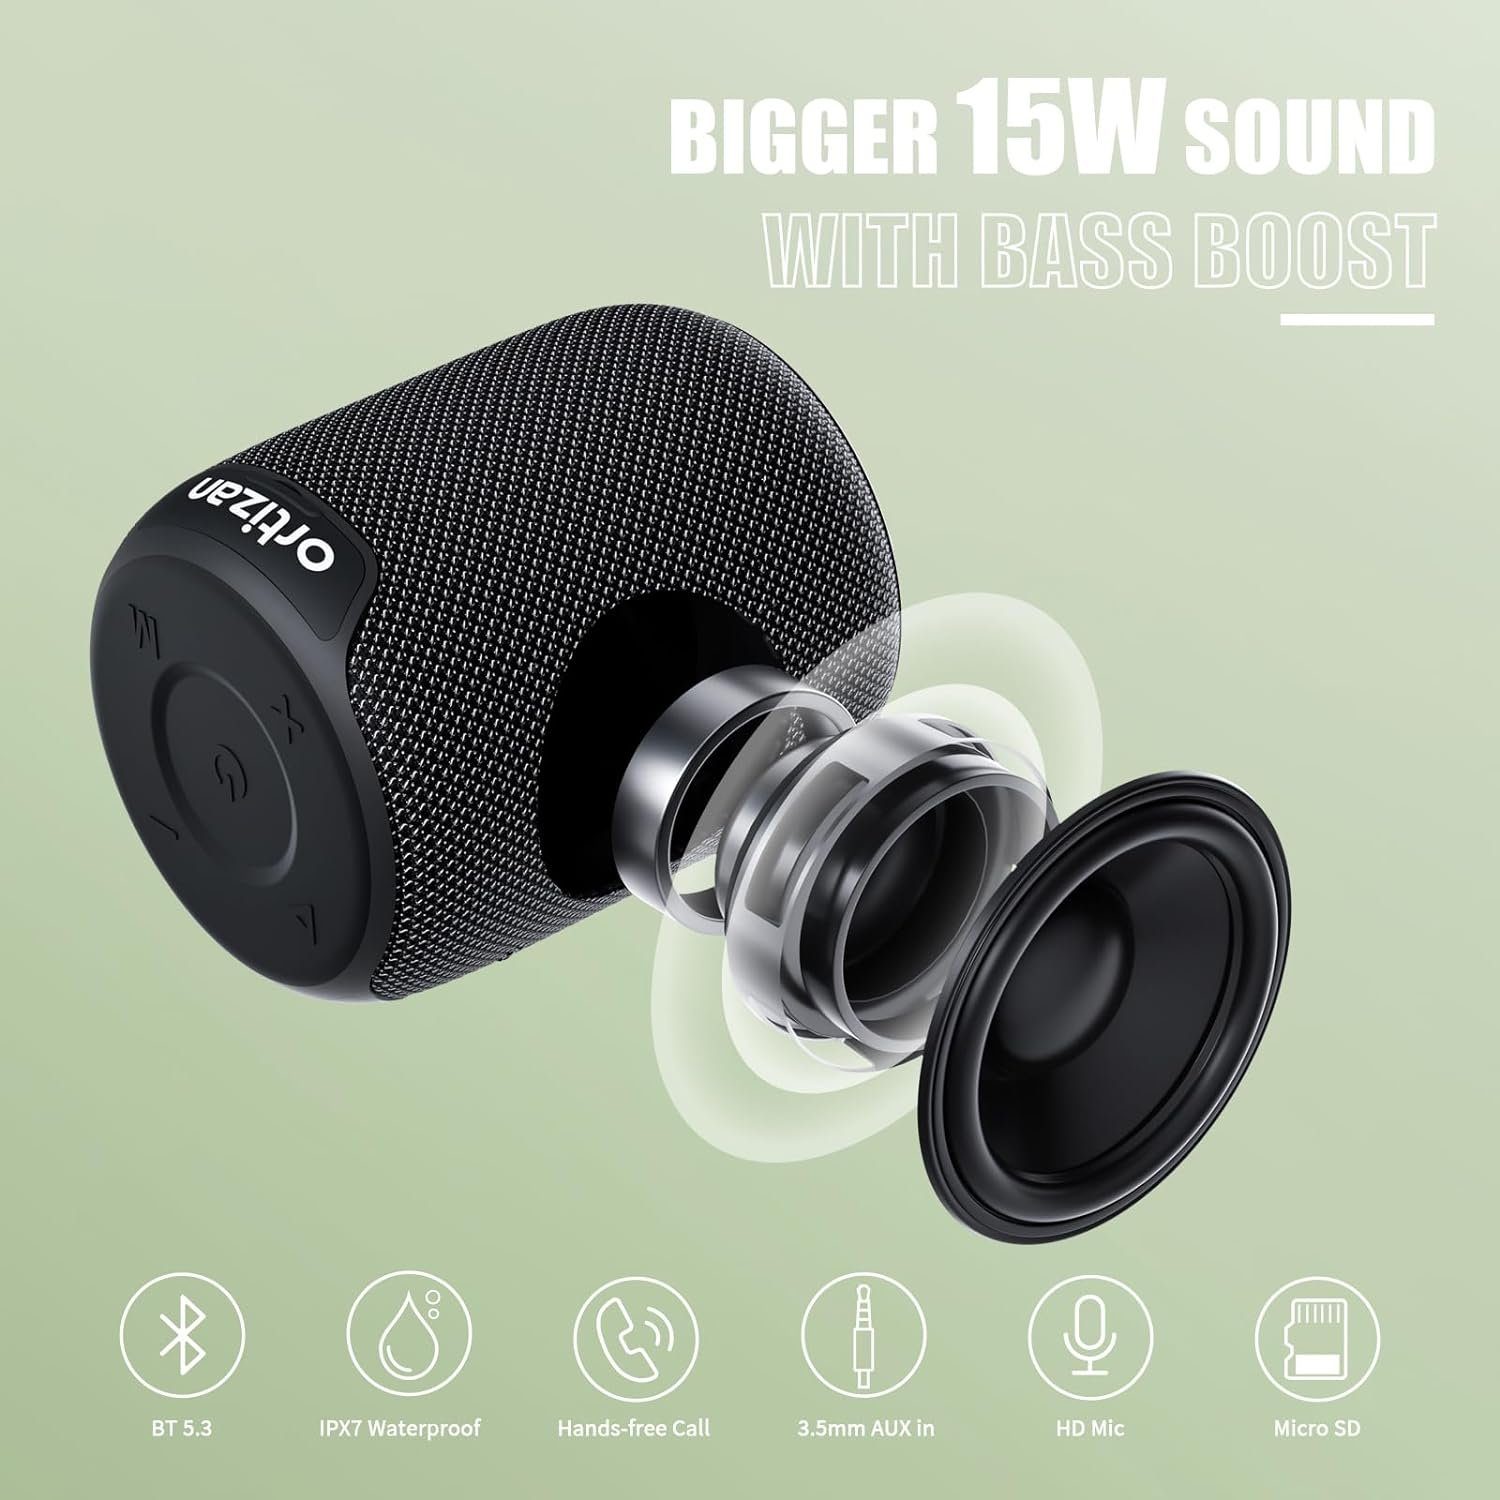 Ortizan Stereo Lautsprecher (Bluetooth, 15 Akku) Wasserdicht, Bluetooth W, 5.3, 1000 mit Bass Intensiver IPX7 Minuten